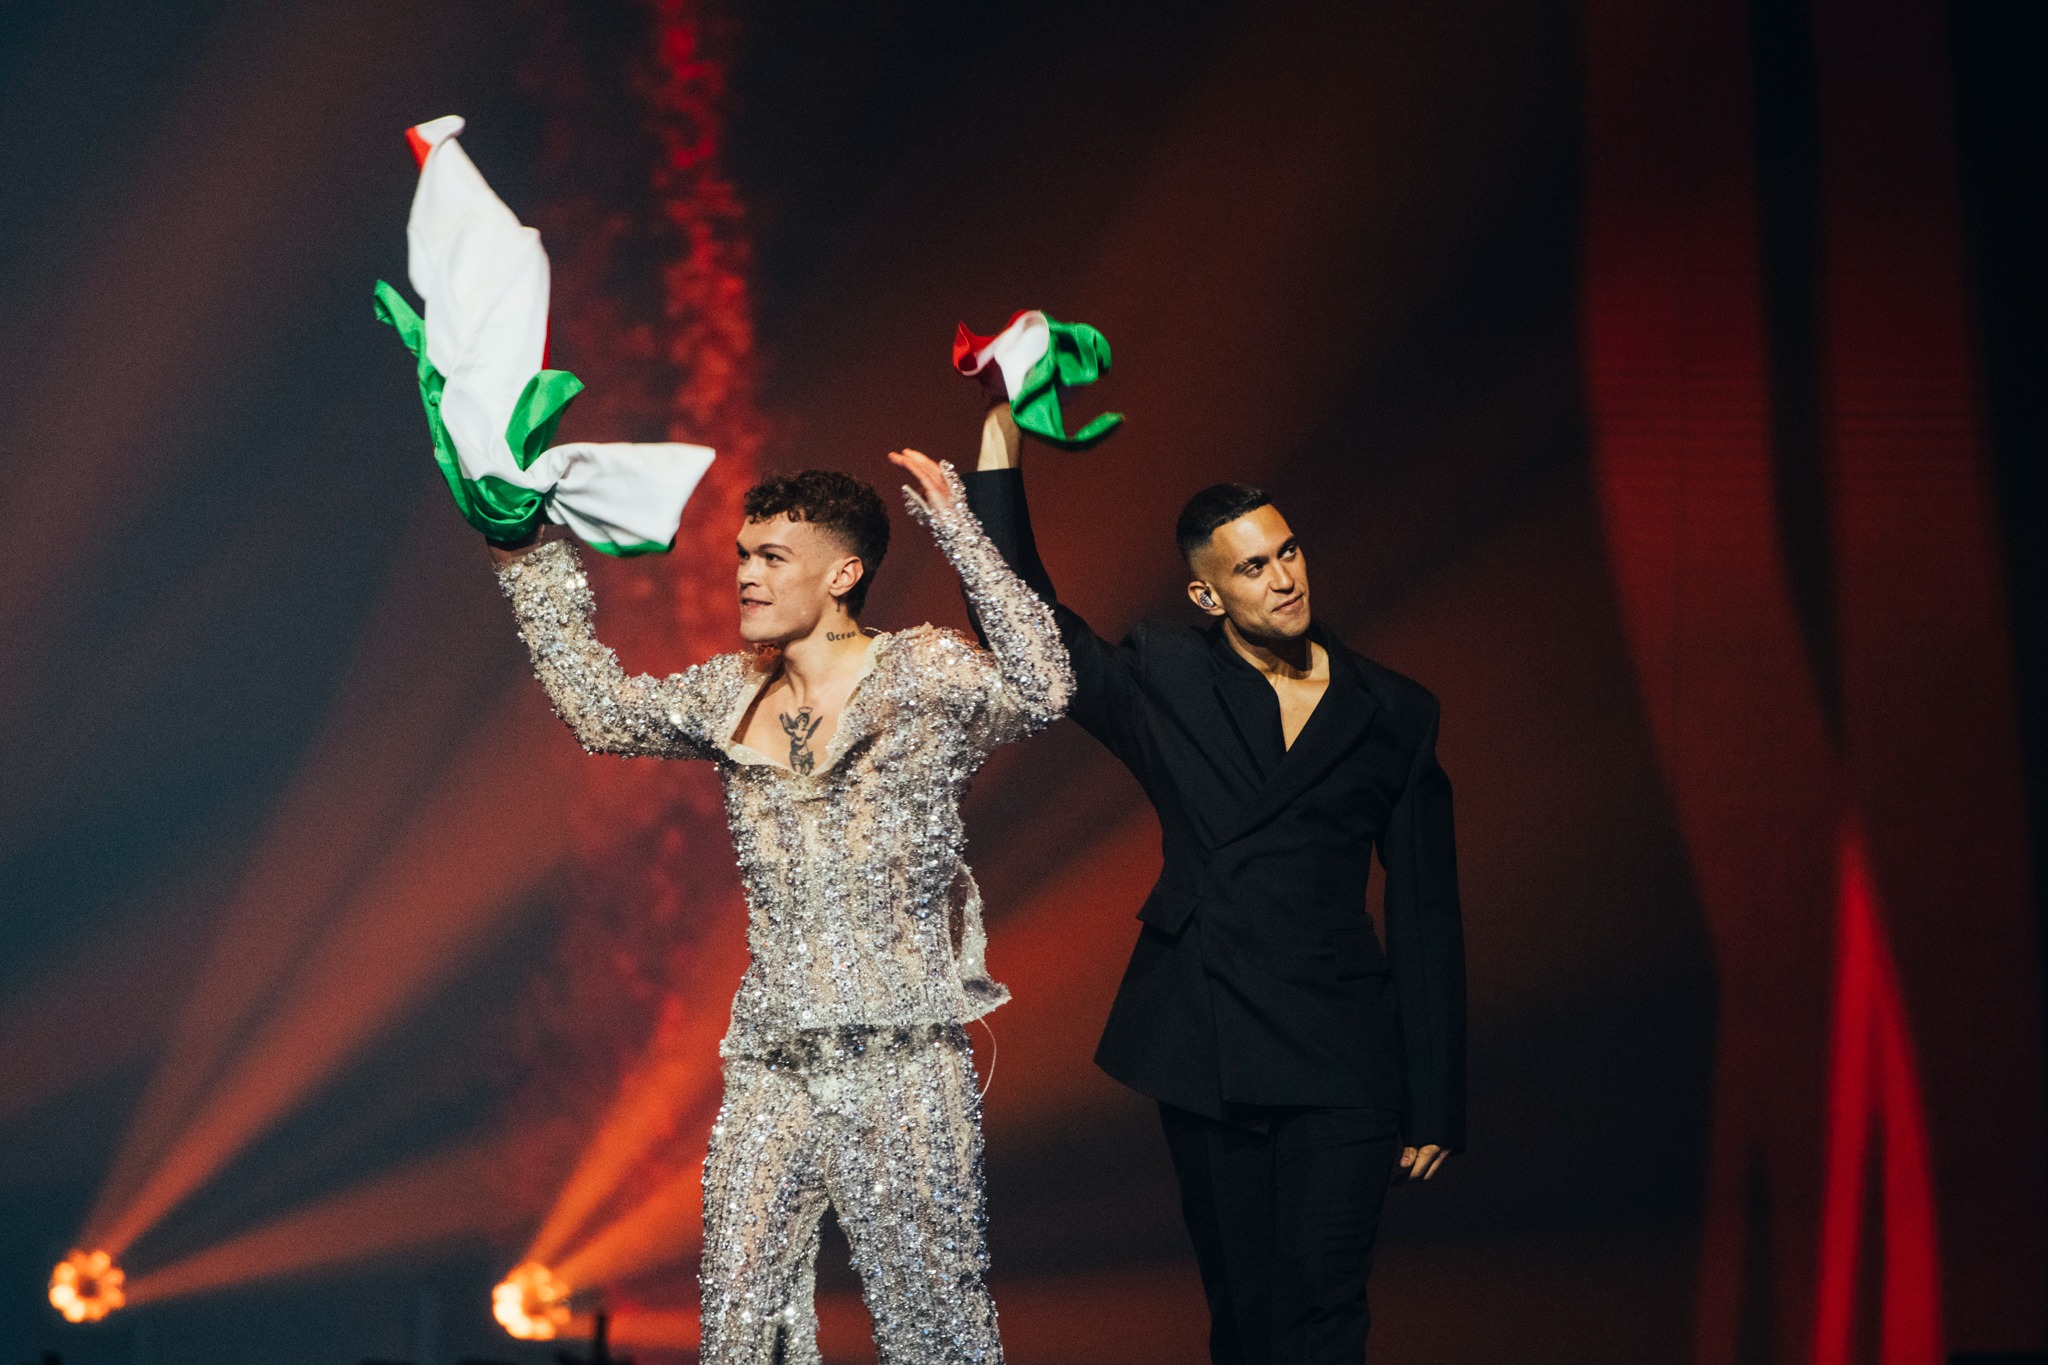 Predstavnici Italije na Eurosongu 2022. Mahmood i Blanco tijekom flag parade, Torino.